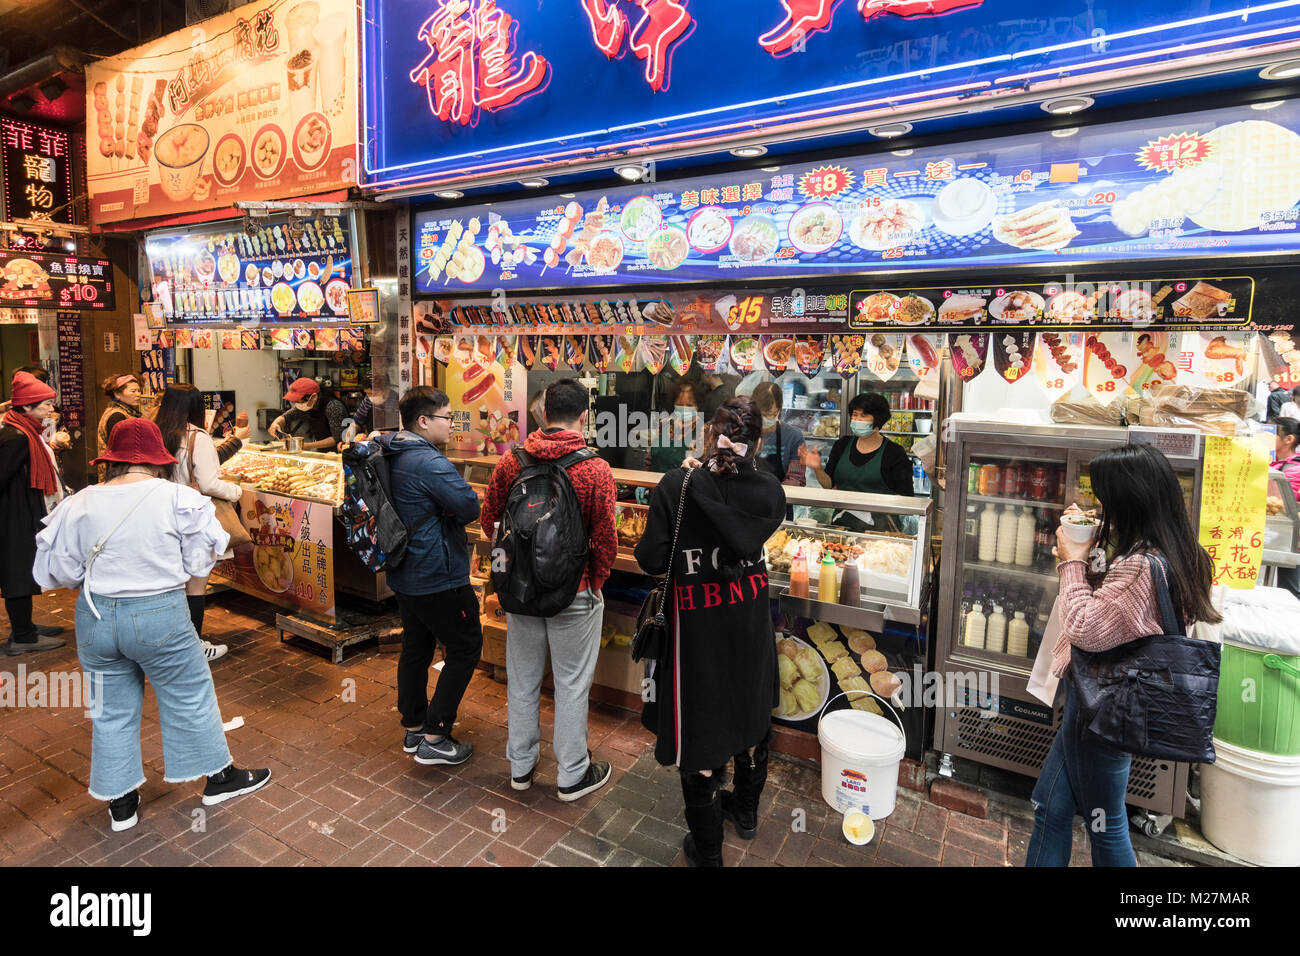 Hong Kong - 25 de enero de 2018: la gente compra diversos aperitivos, comida de la calle como el pescado y la carne bolas de pinchos, en un establo en las atestadas calles de Mong Foto de stock